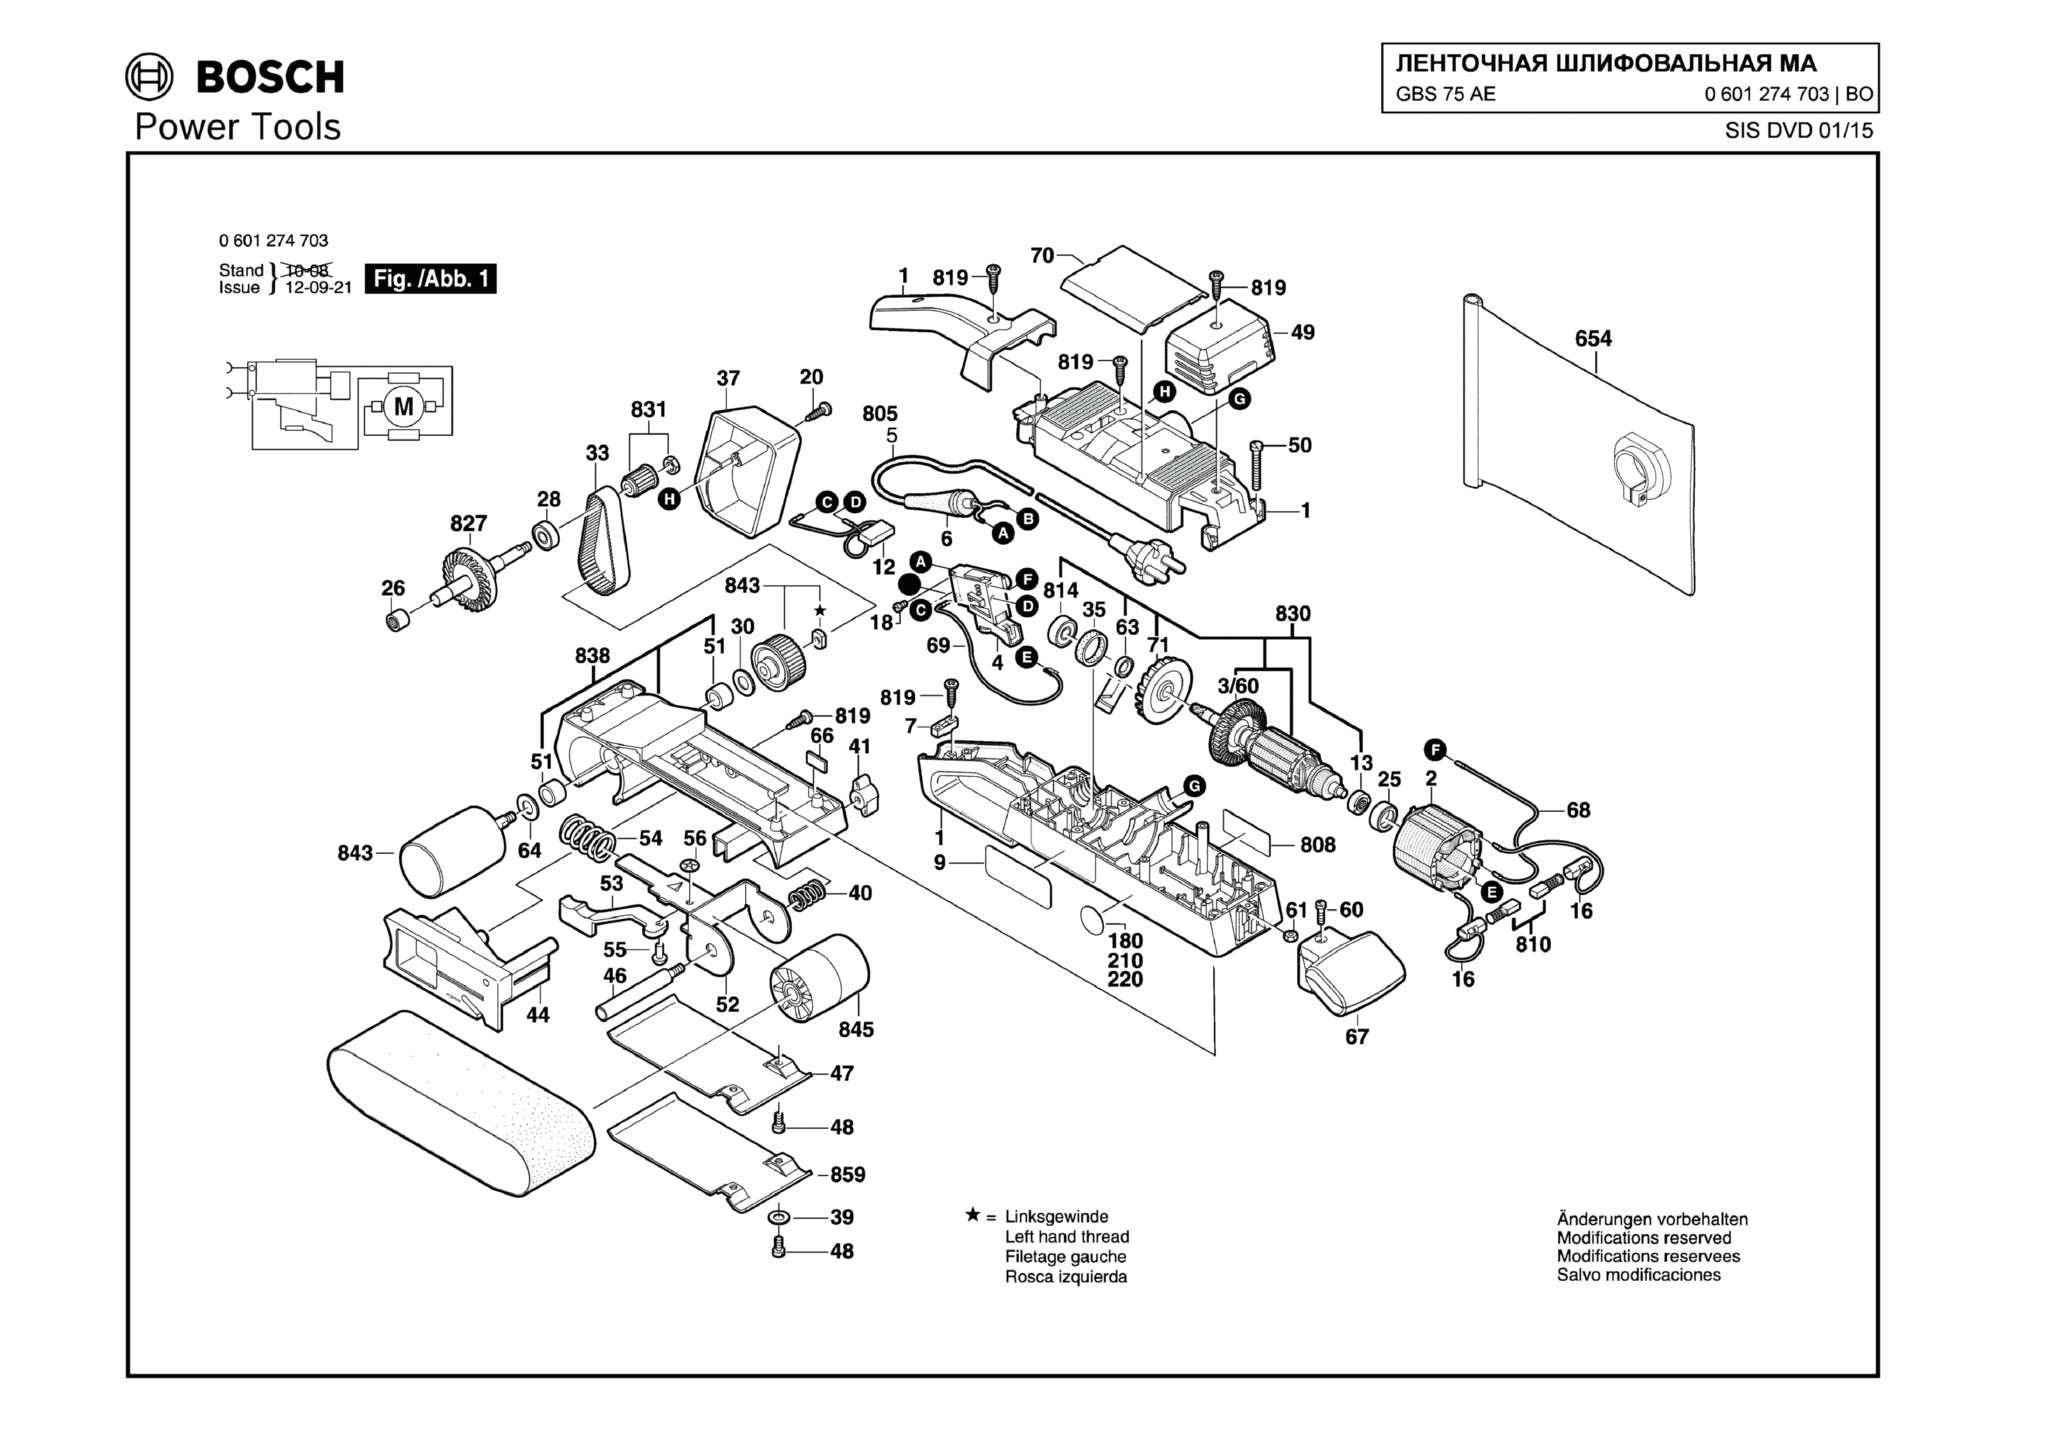 Запчасти, схема и деталировка Bosch GBS 75 AE (ТИП 0601274703)